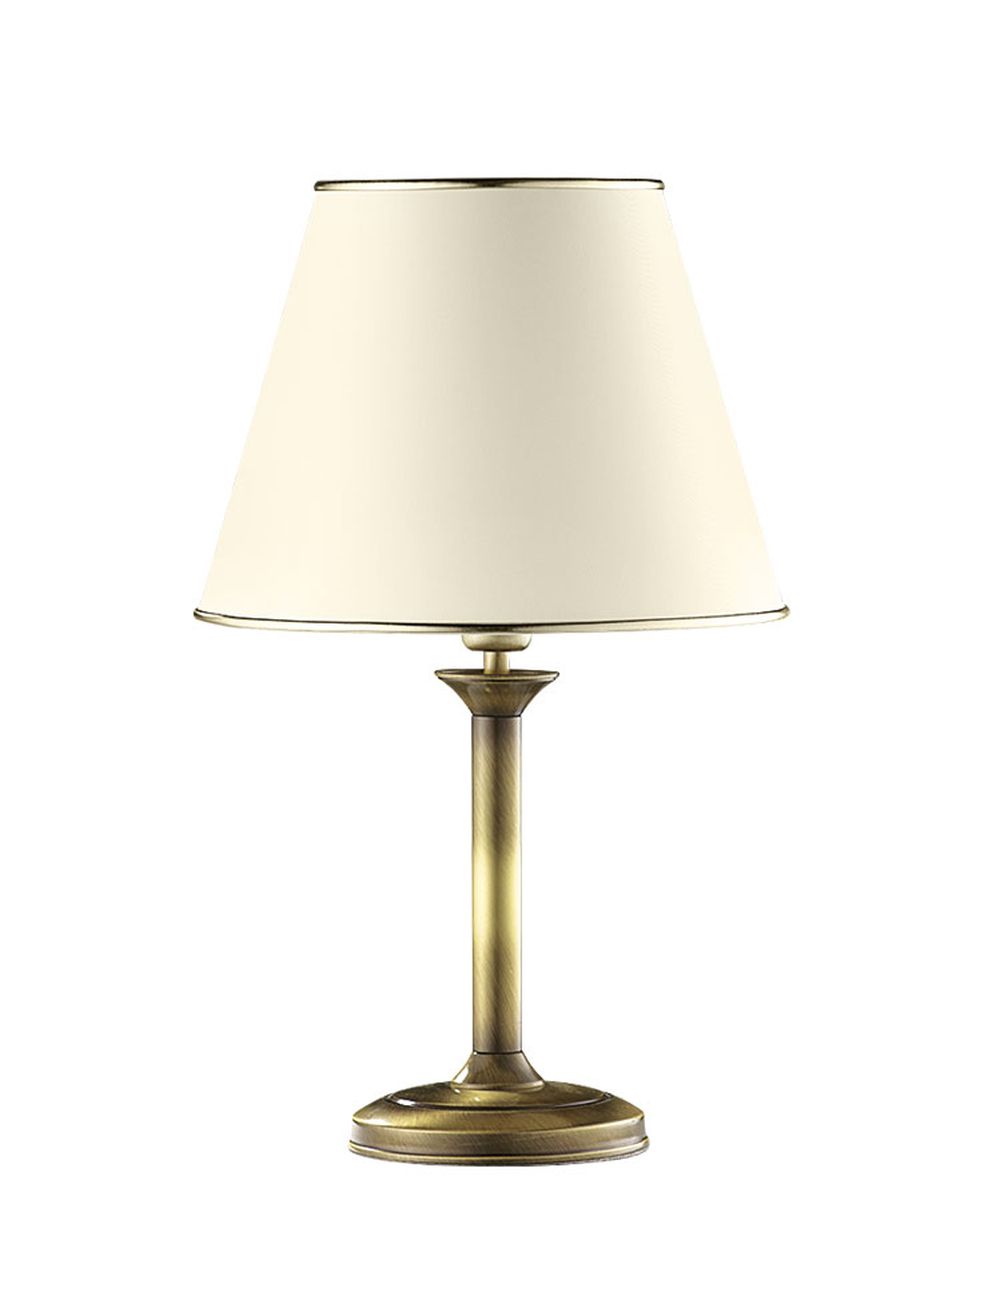 Tischleuchte PENELO in Messing Antik Lampe H:44cm